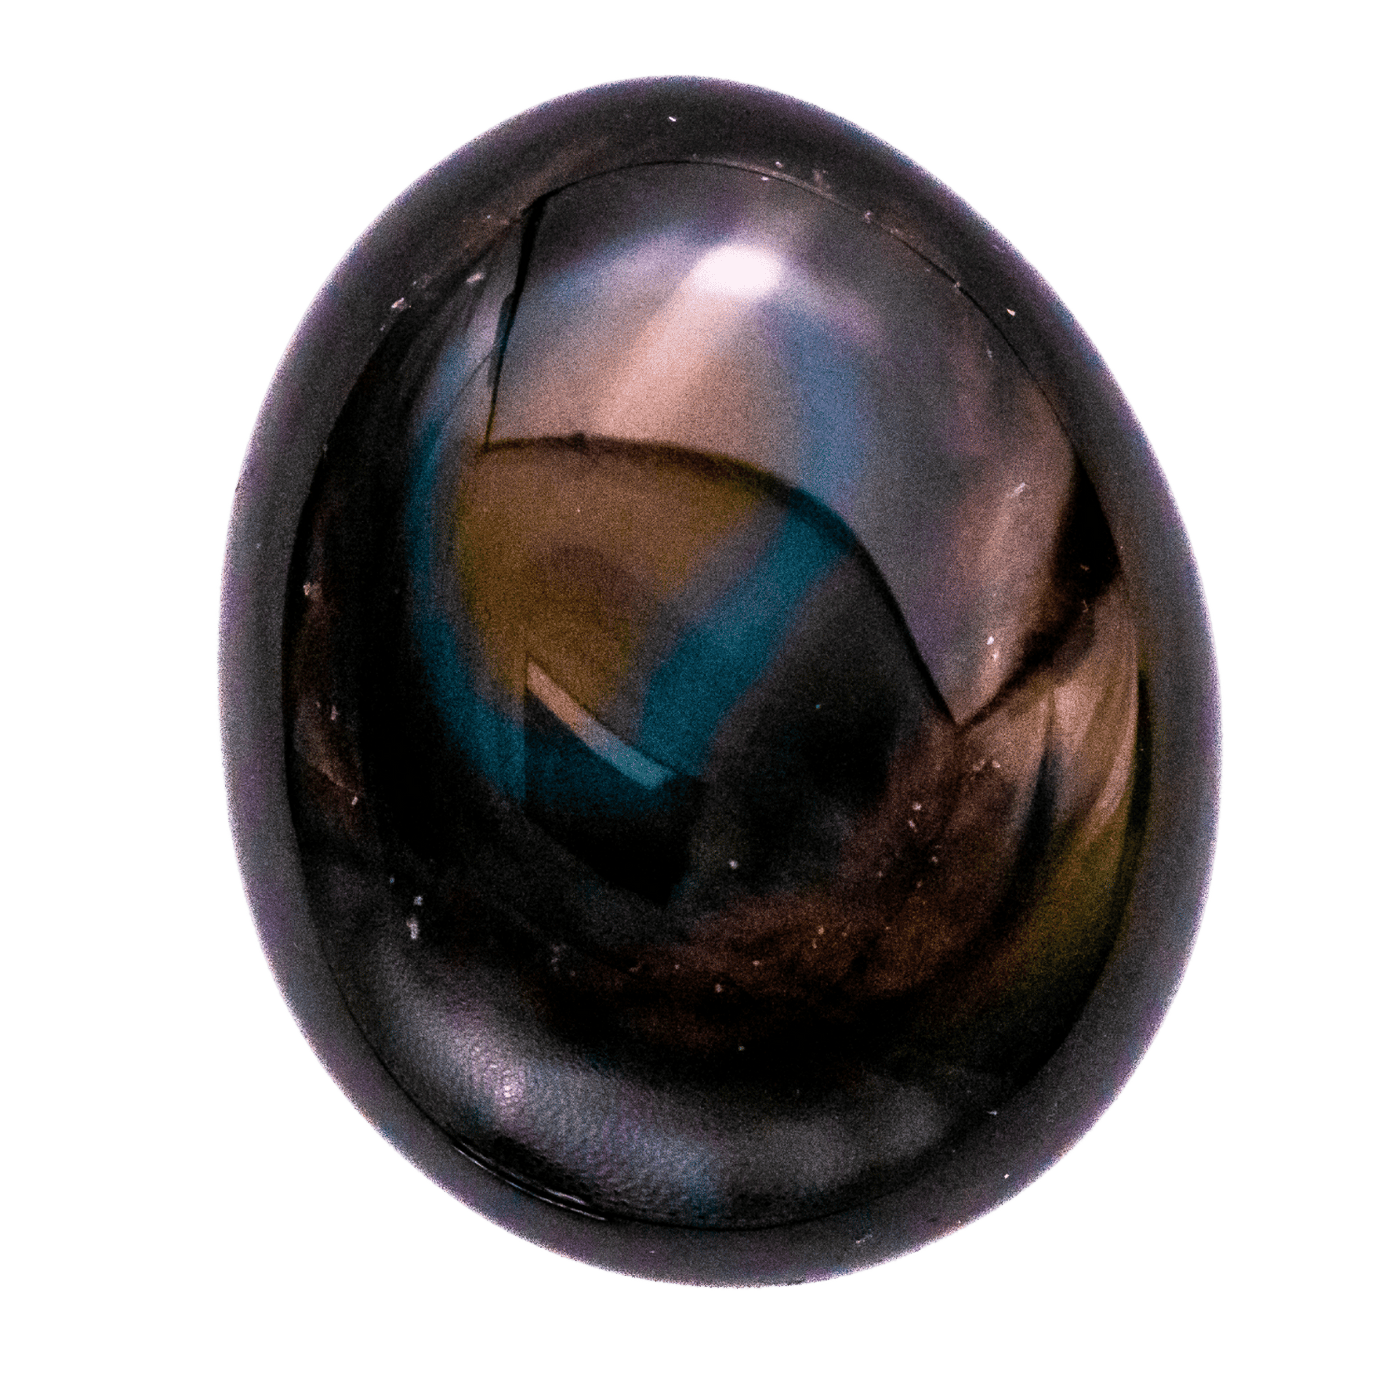 Rainbow Obsidian Pocket Stone